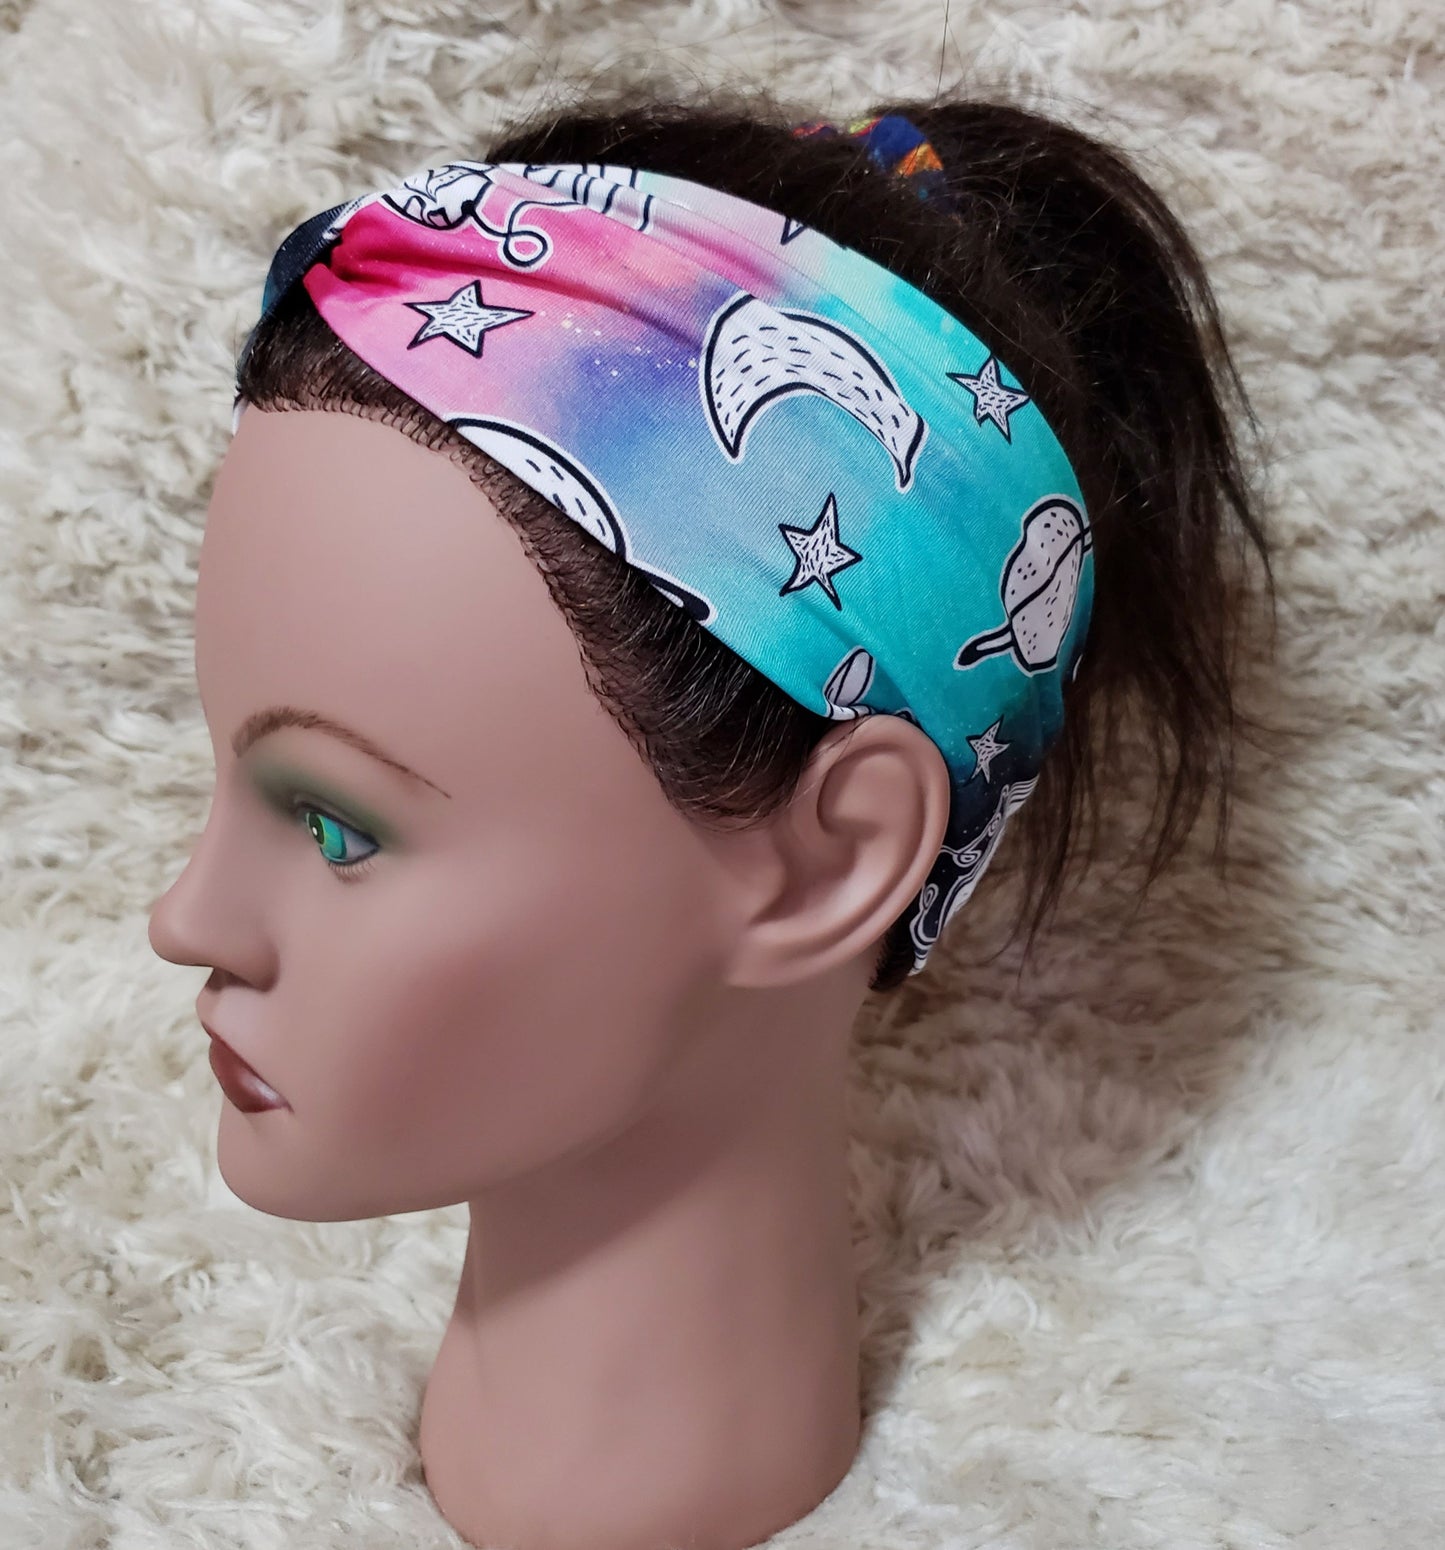 Pastel saturn moon and stars turban style headband